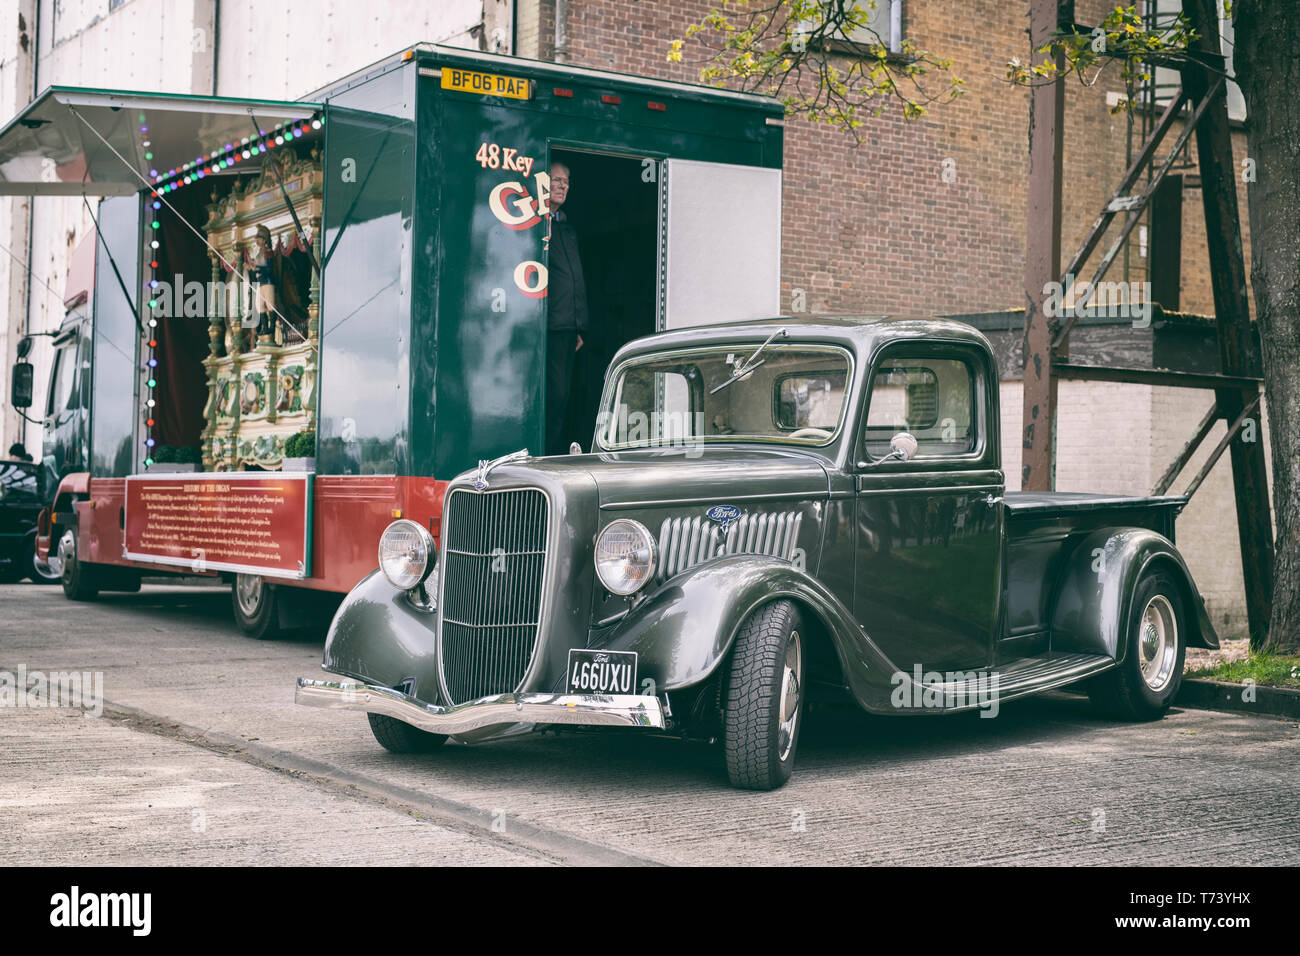 1936 Ford pick up truck en face d'un orgue de foire victorienne à Bicester heritage centre, 'Drive il Day'. Bicester, Oxfordshire, Angleterre. Banque D'Images